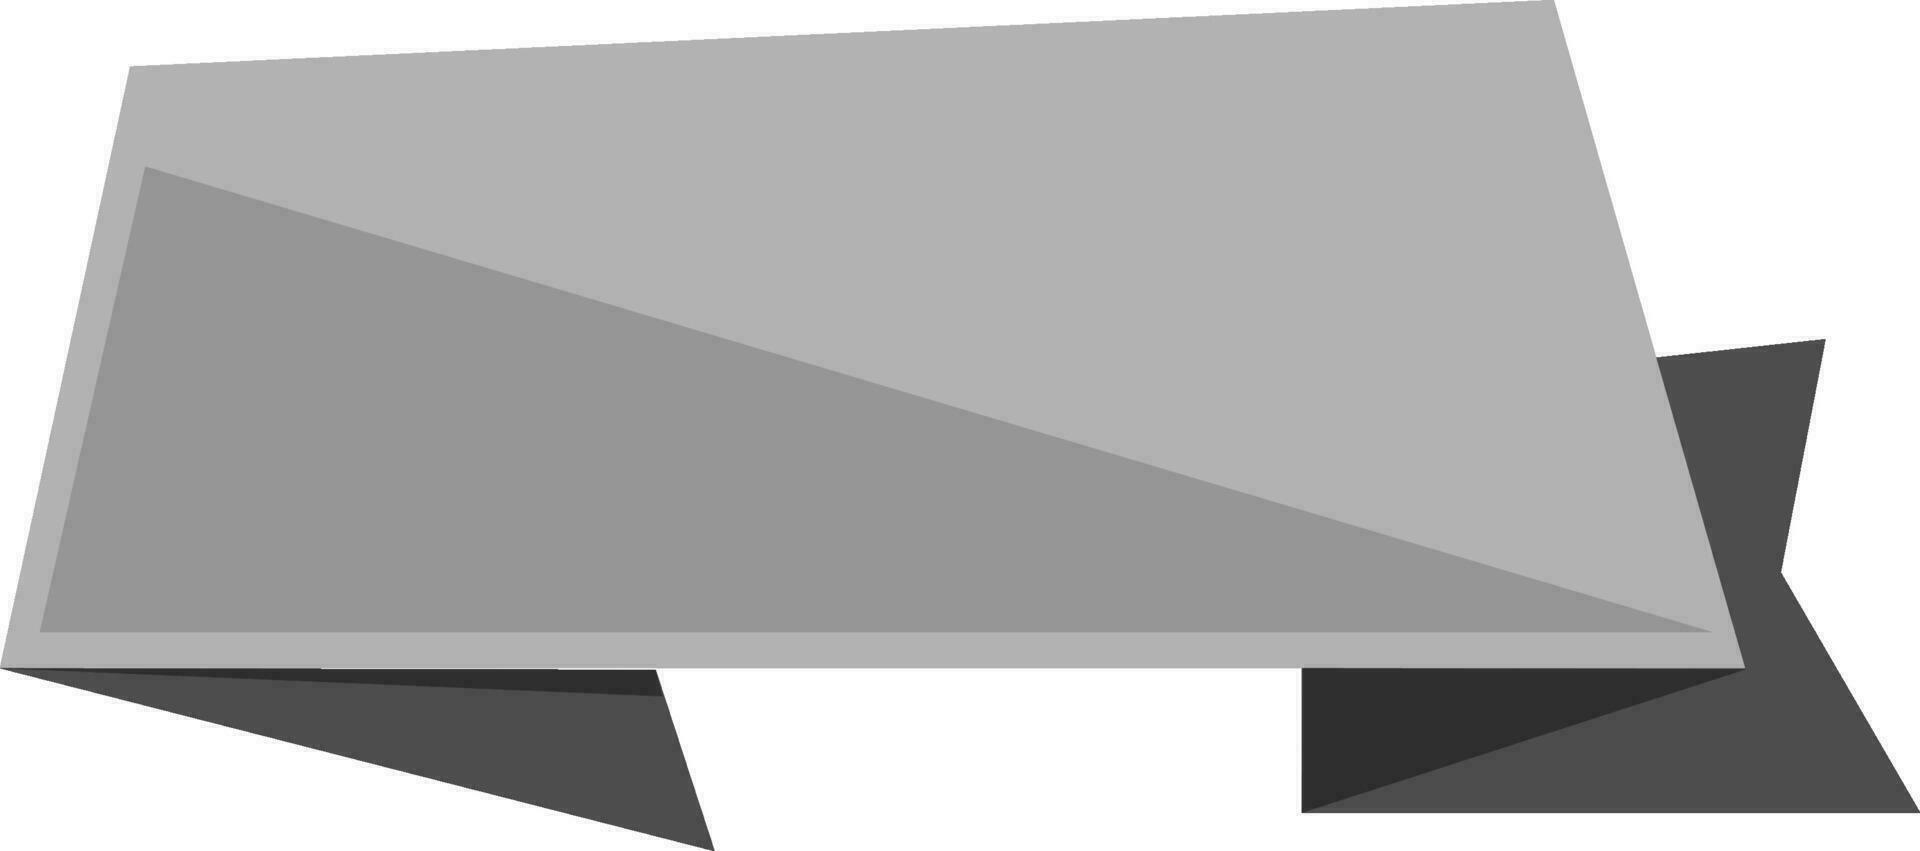 gris blanco etiqueta o pegatina. vector